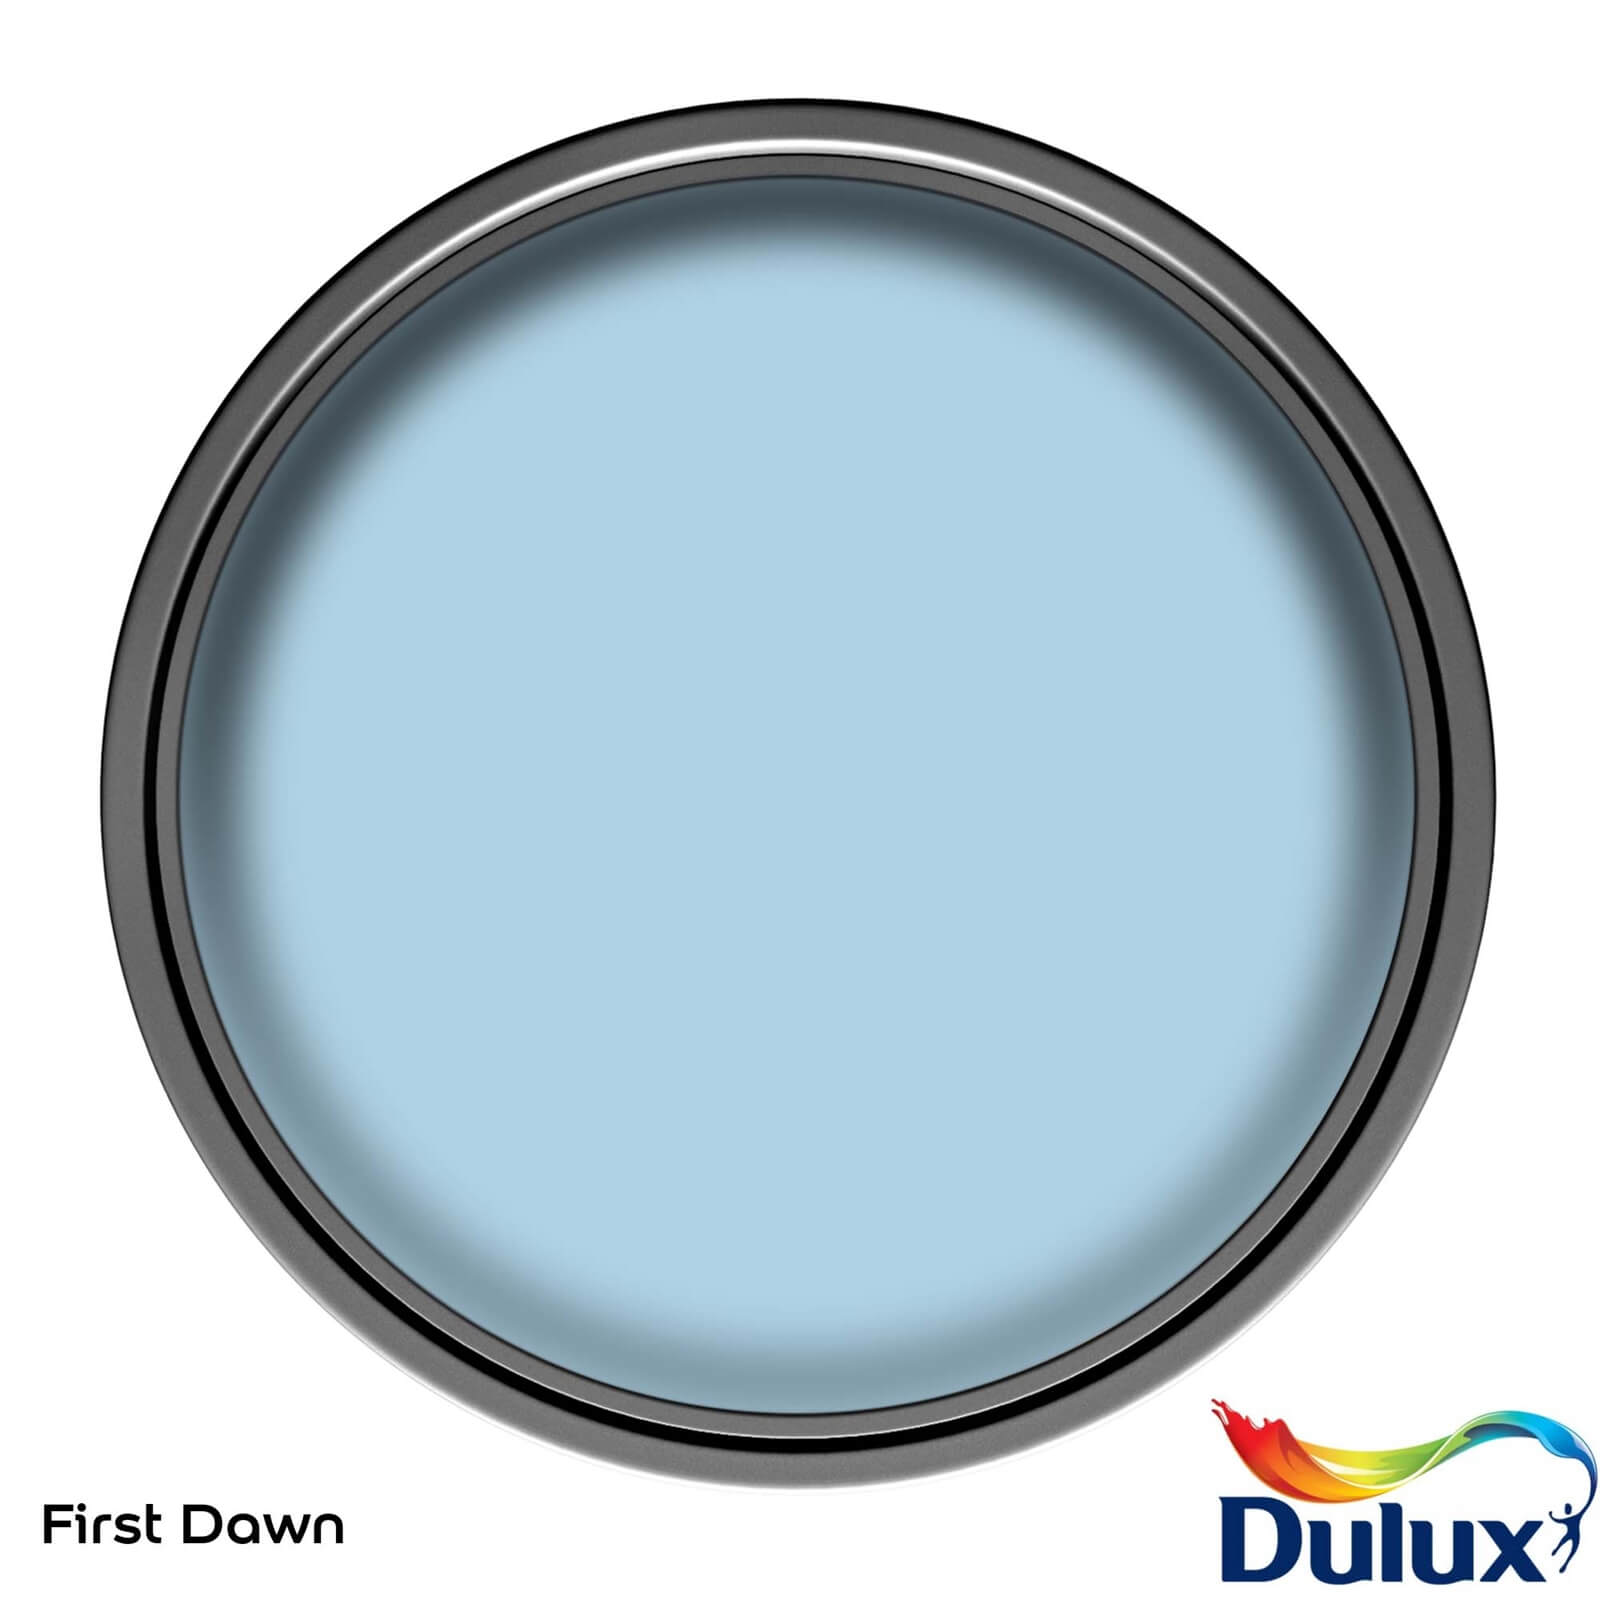 Dulux Easycare Washable & Tough Matt Paint First Dawn - 2.5L